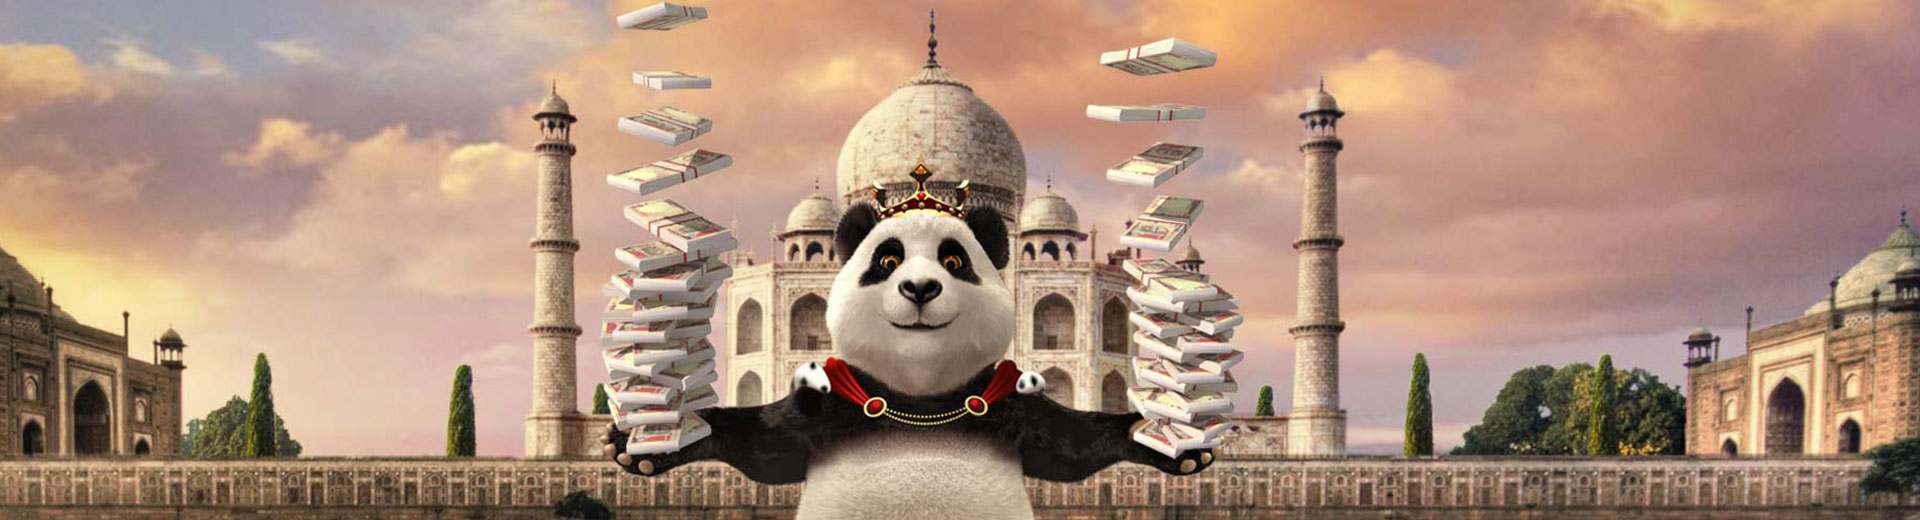 5 Best Megaways Slots to Play at Royal Panda